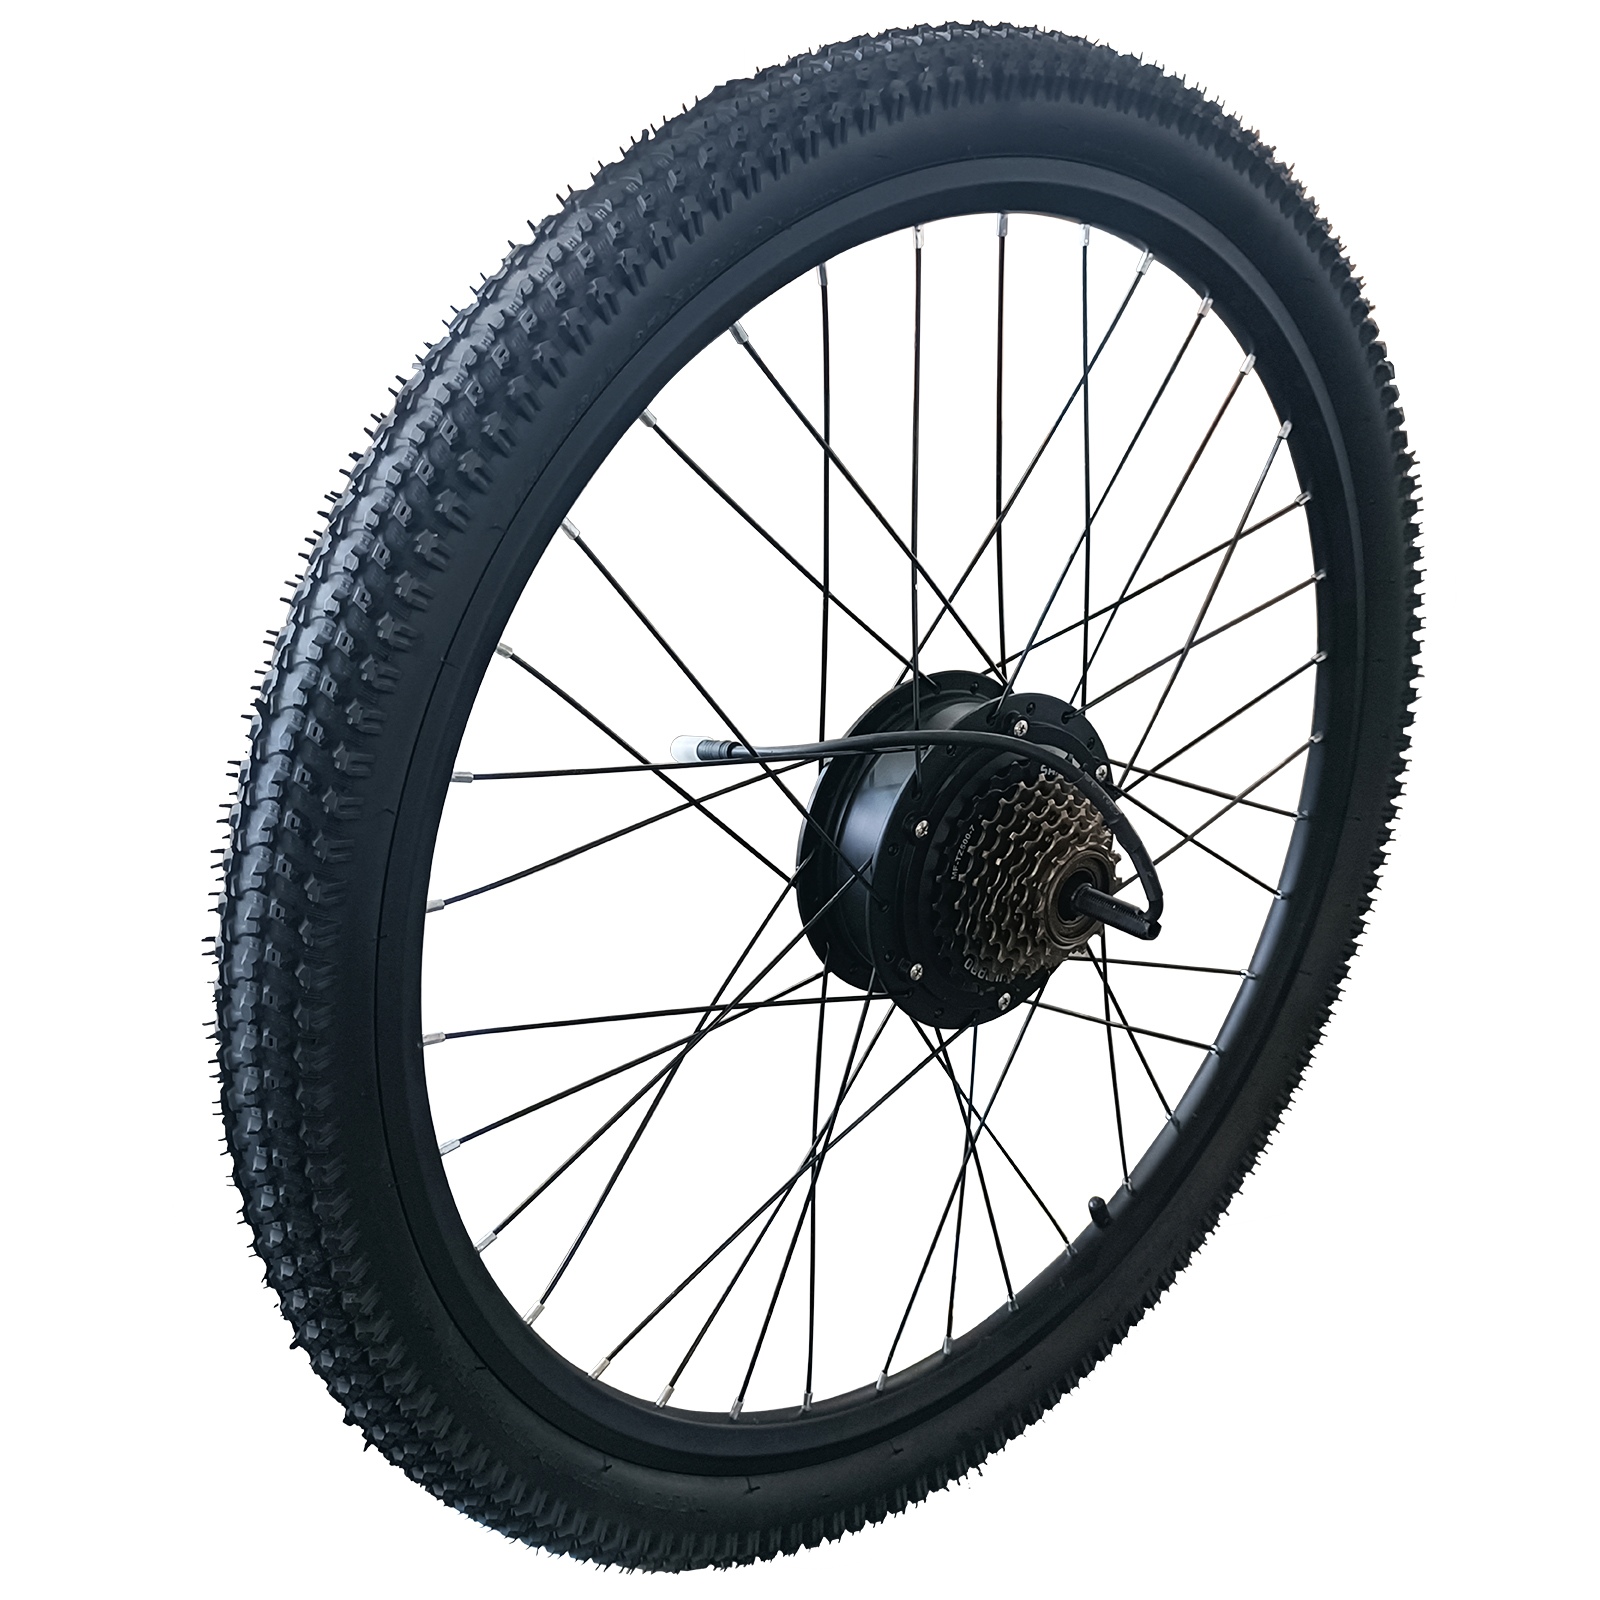 Wheelspeed Rear Wheel for Aries Mountain Bike 